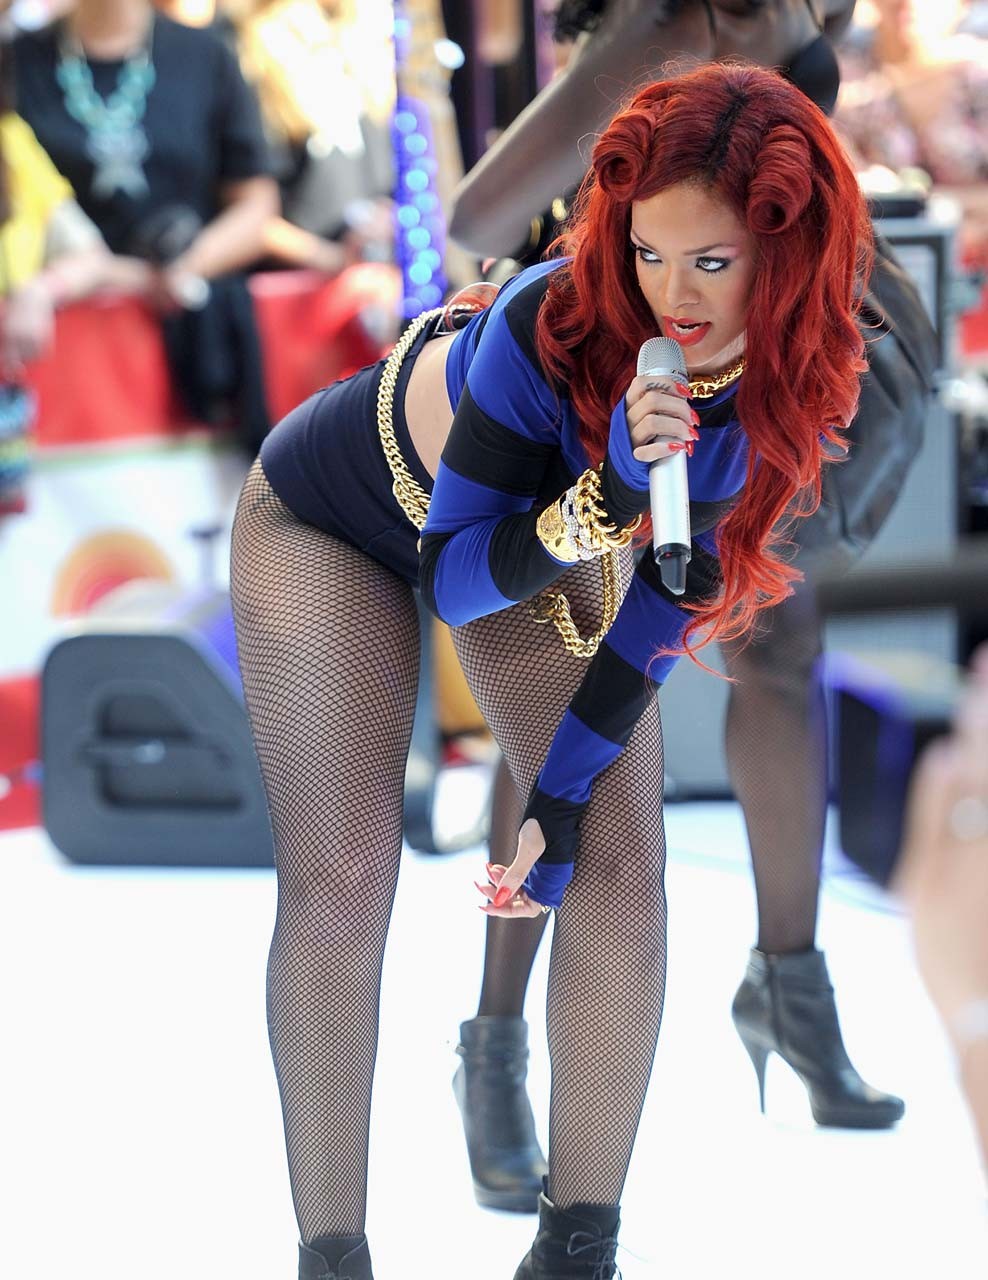 Rihanna muy leggy en shorts y medias de red en el escenario paparazzi fotos
 #75302892